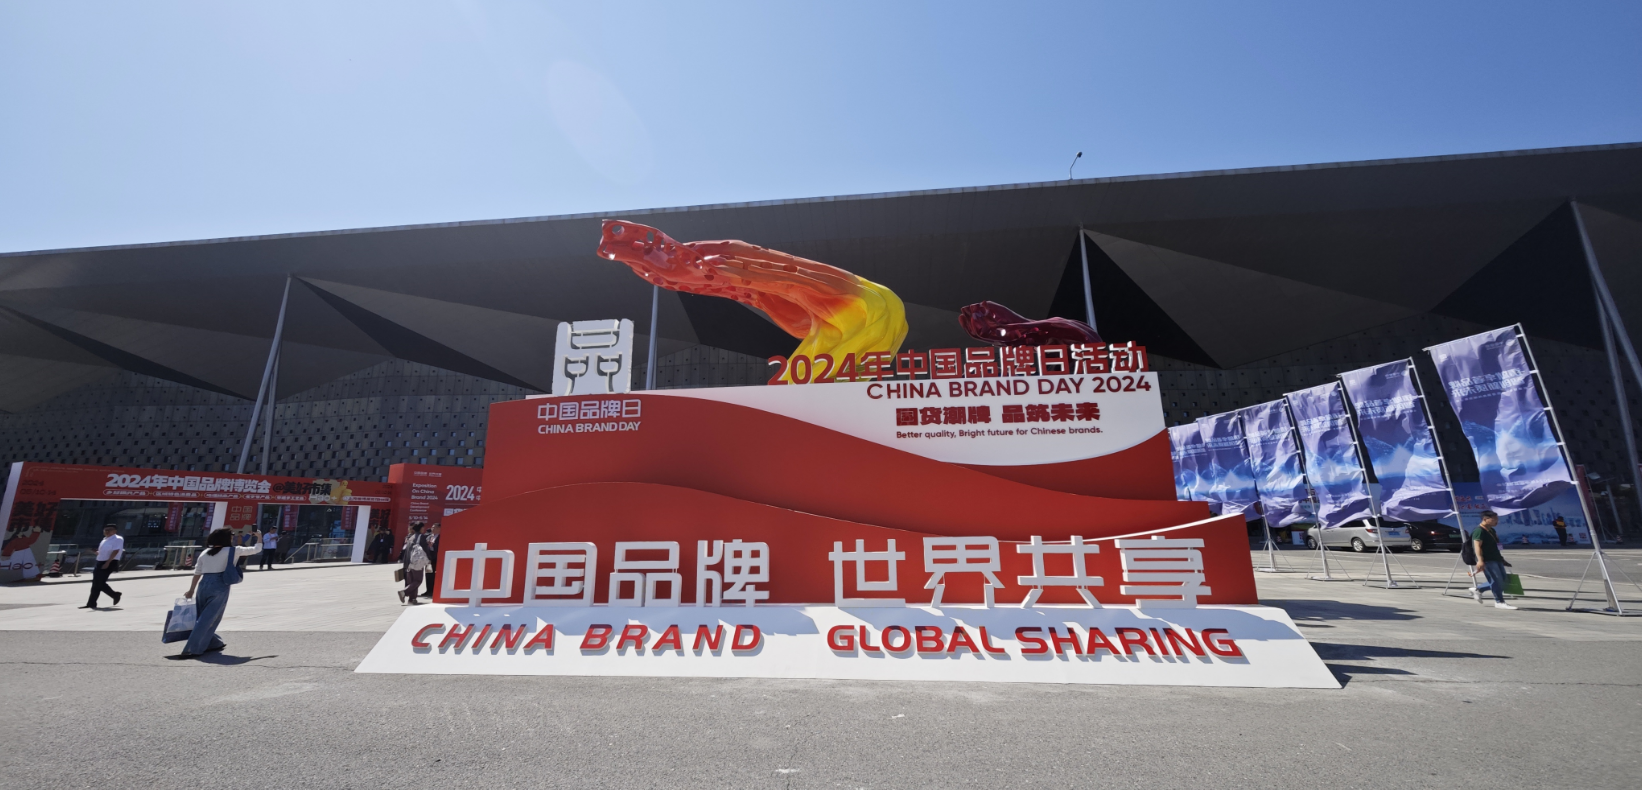 2024年中国品牌日活动于5月10日至14日在上海世博展览馆举行。记者 许维娜摄